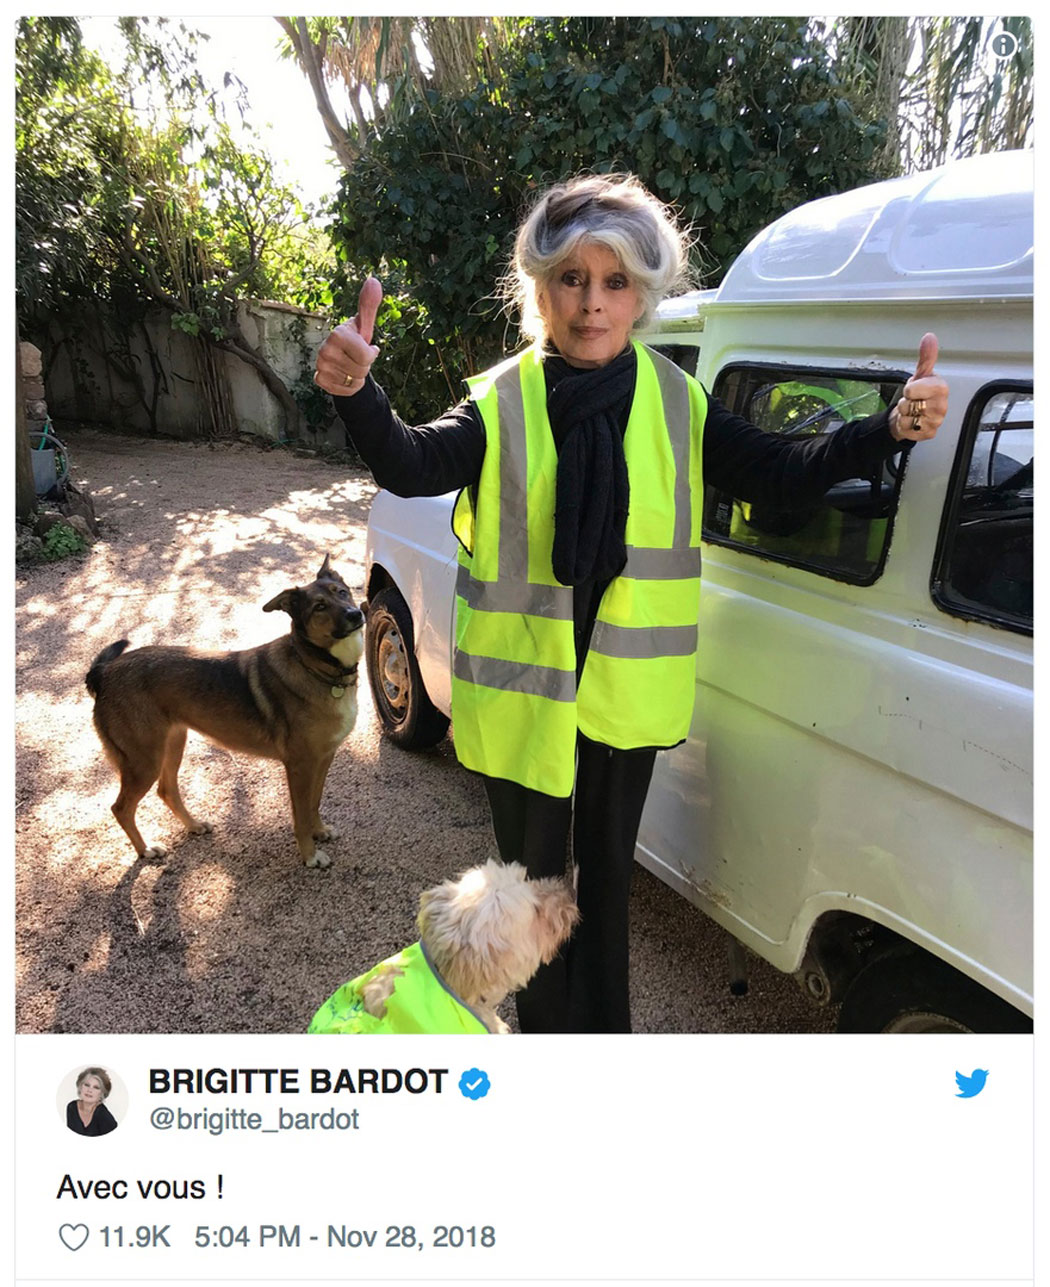 Brigitte Bardot unterstützt #GiletsJaunes